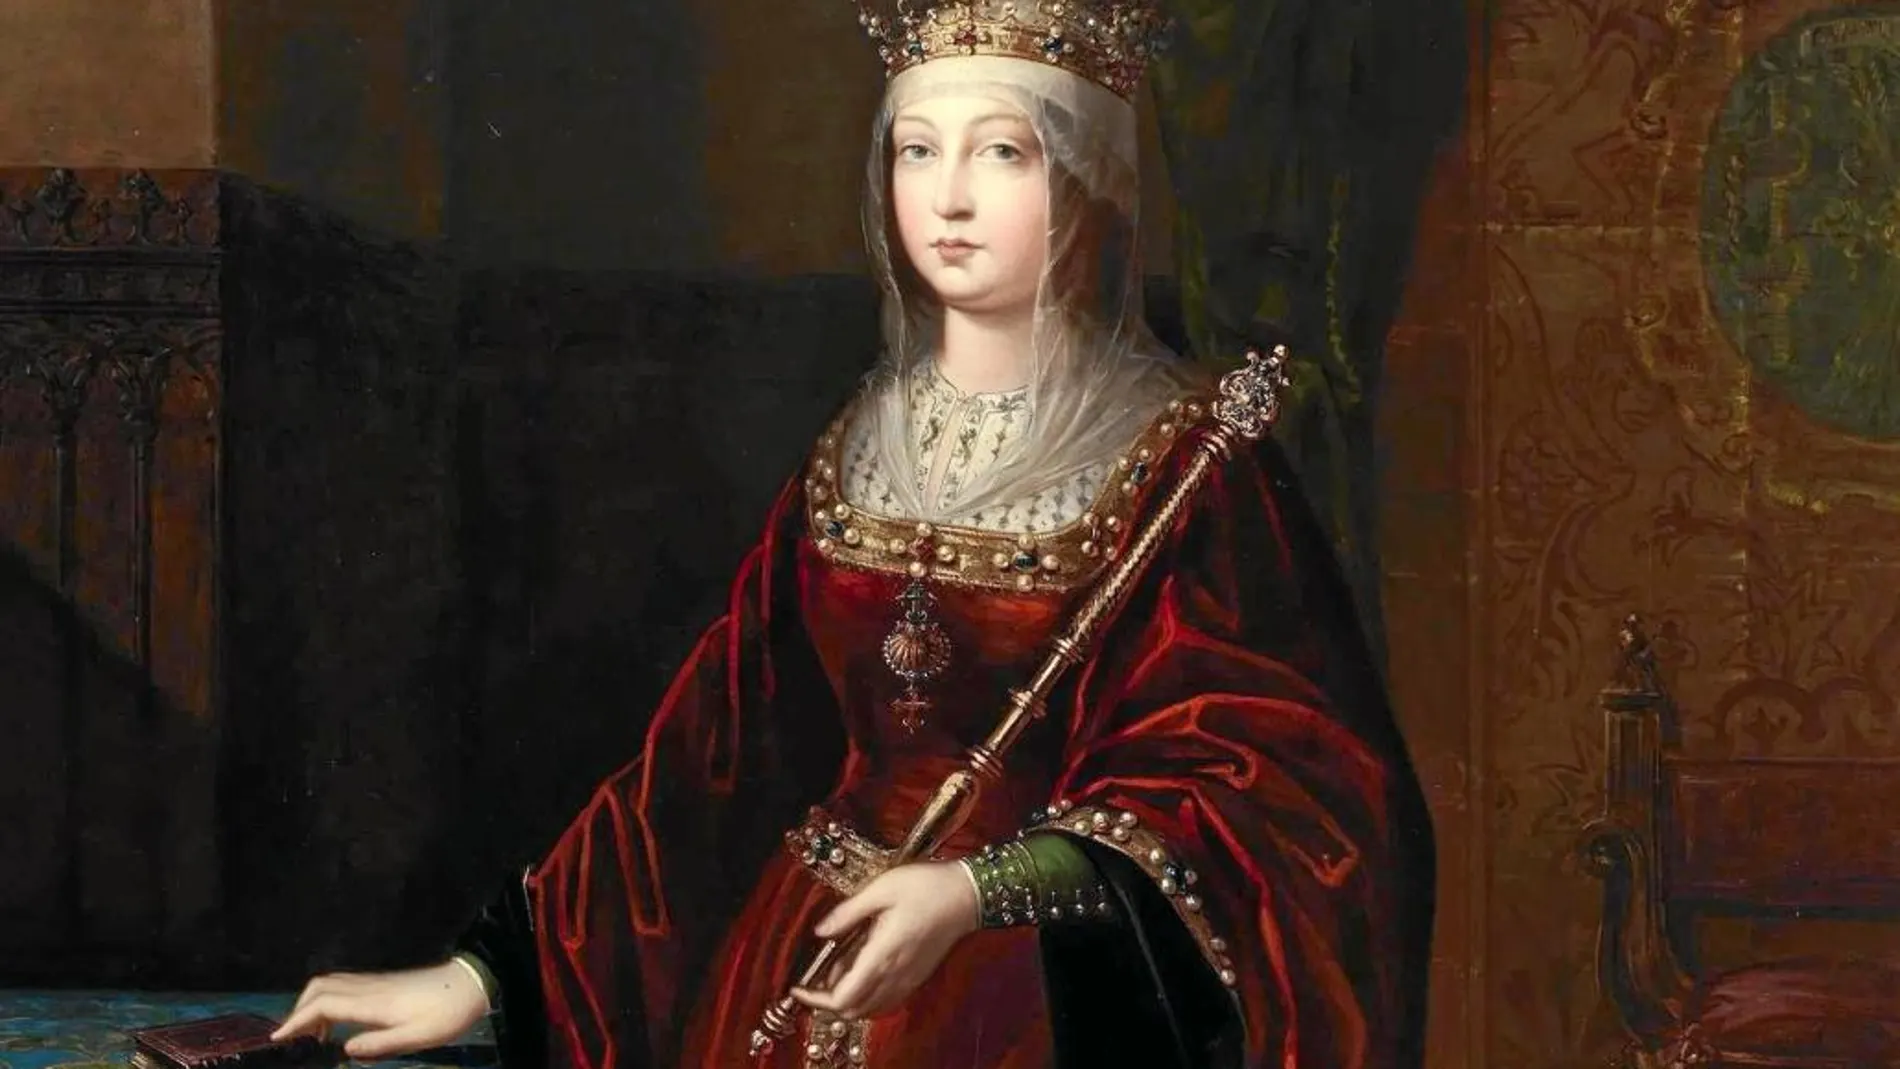 Isabel la católica, en un lienzo de Luis de Madrazo y Kuntz, pintado en torno a 1848, que se conserva en el Museo del Prado